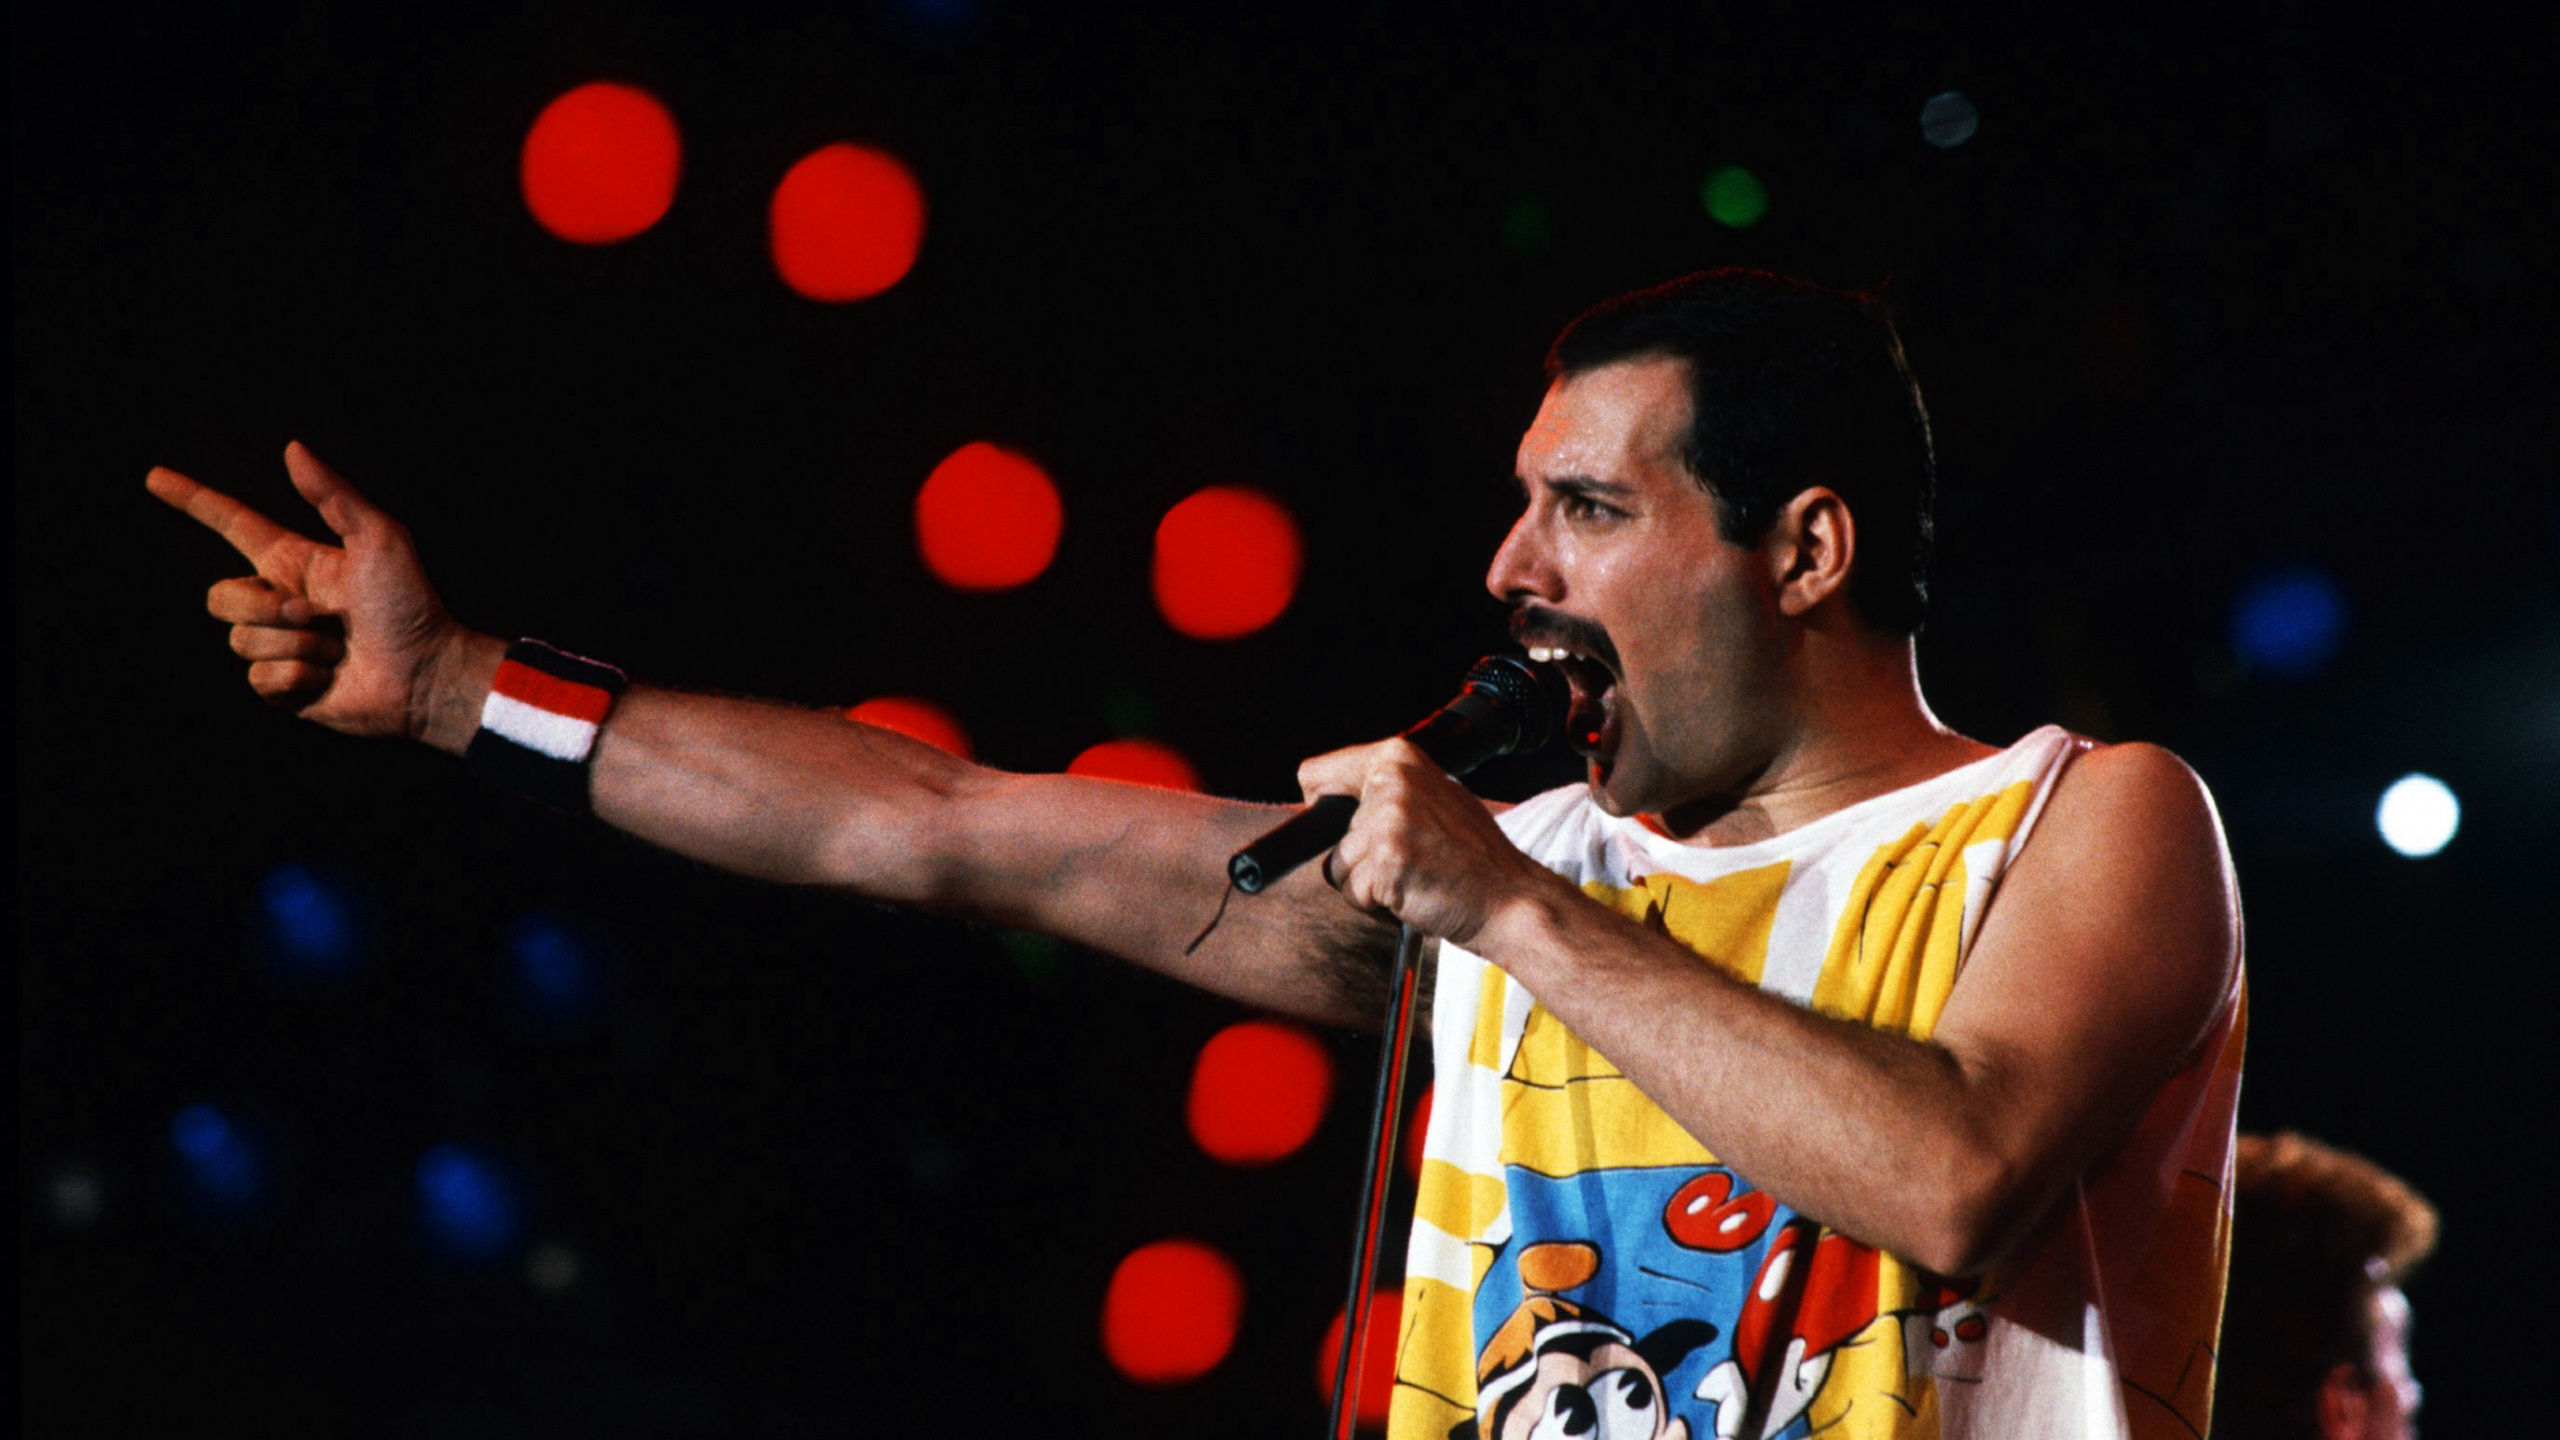 Freddie Mercury, Queen, Leistung, Musik, Unterhaltung. Wallpaper in 2560x1440 Resolution